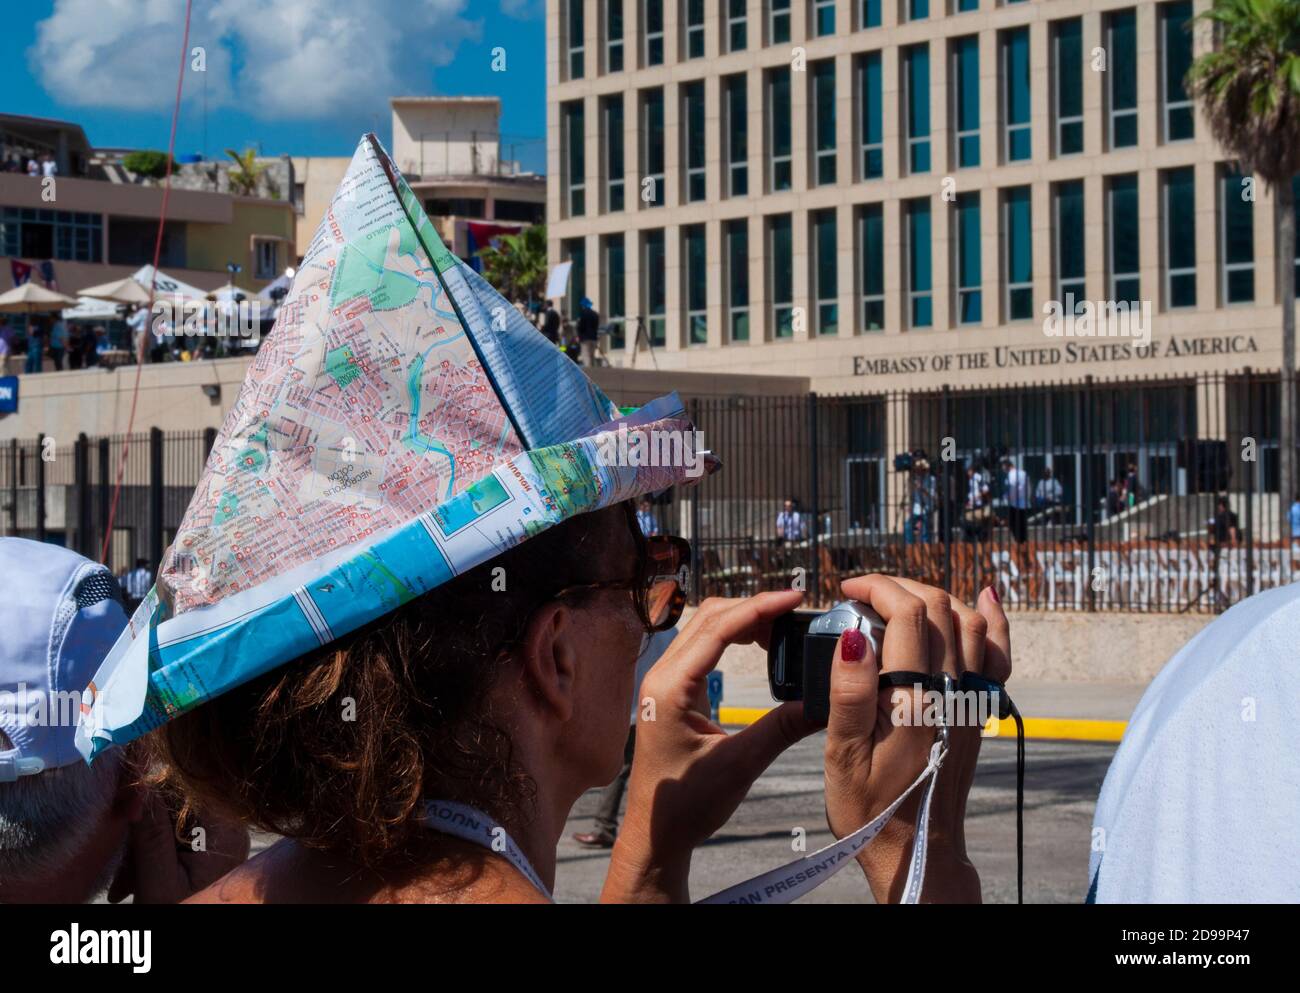 LA HAVANE, CUBA - 08/14/2015. Manifestation à l'extérieur de l'ambassade américaine à Cuba en faveur du développement des relations entre les deux pays Banque D'Images